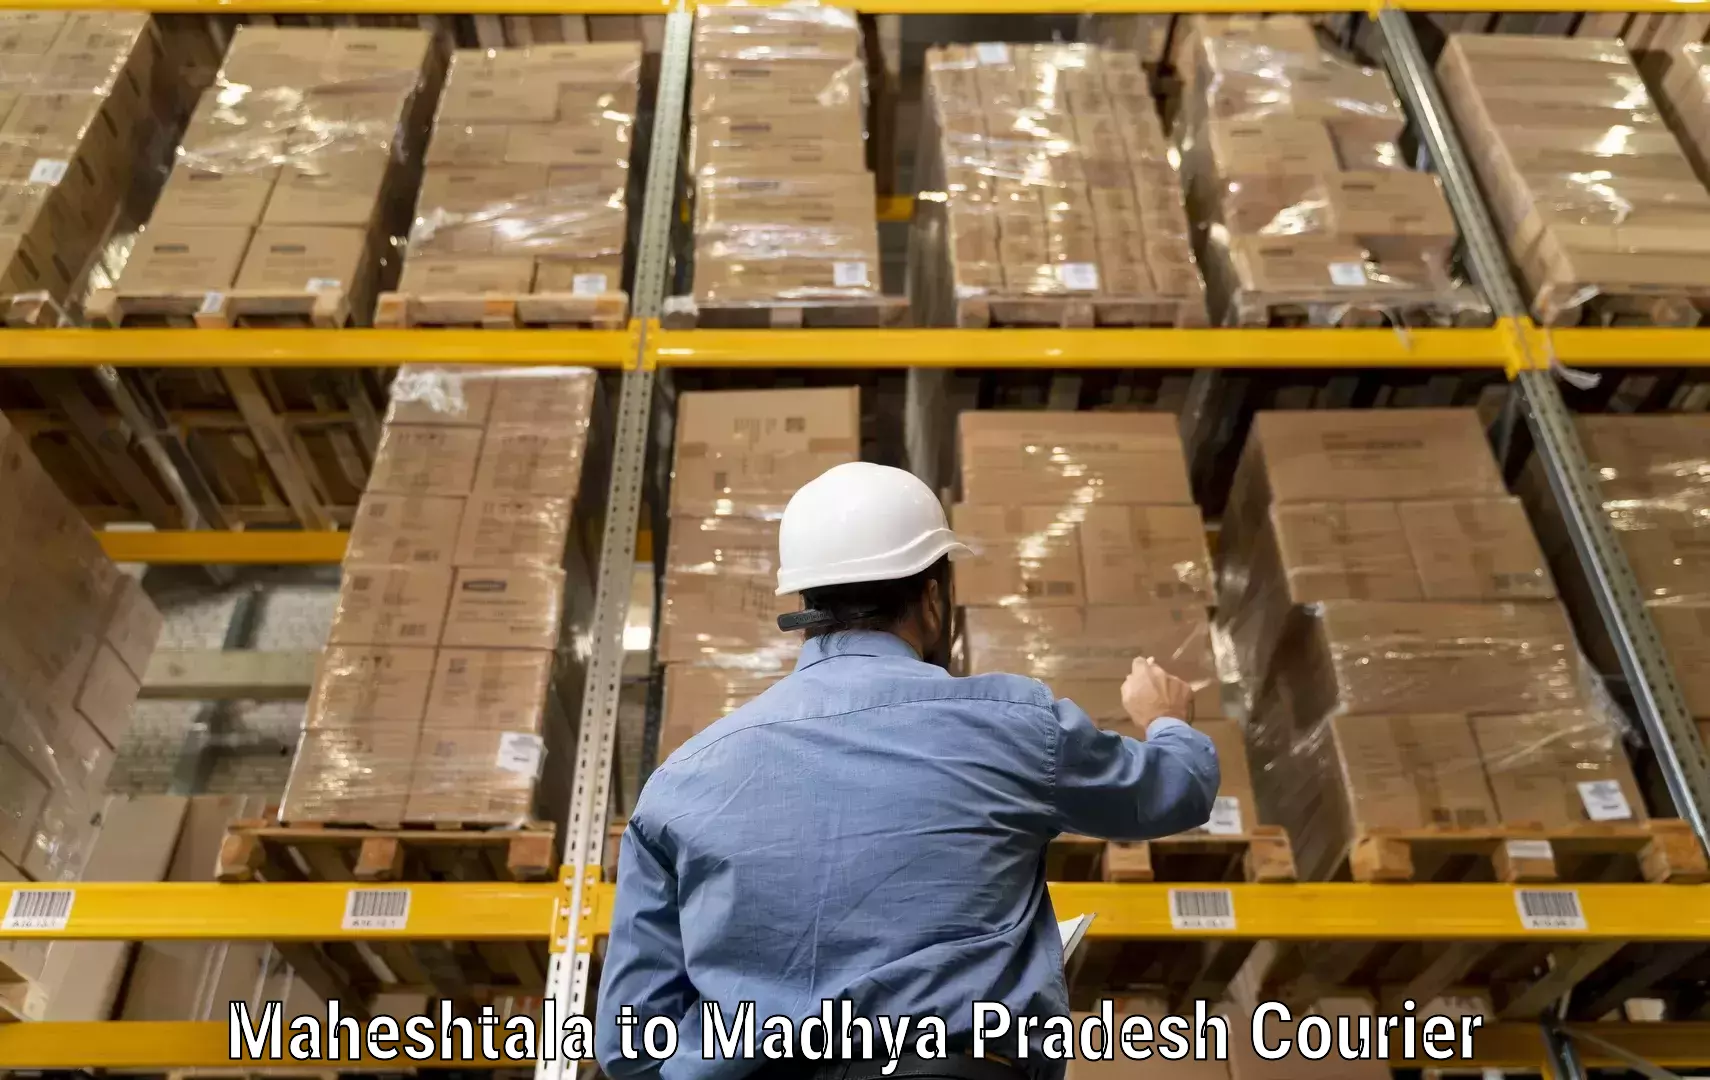 Dynamic courier operations Maheshtala to Jabalpur